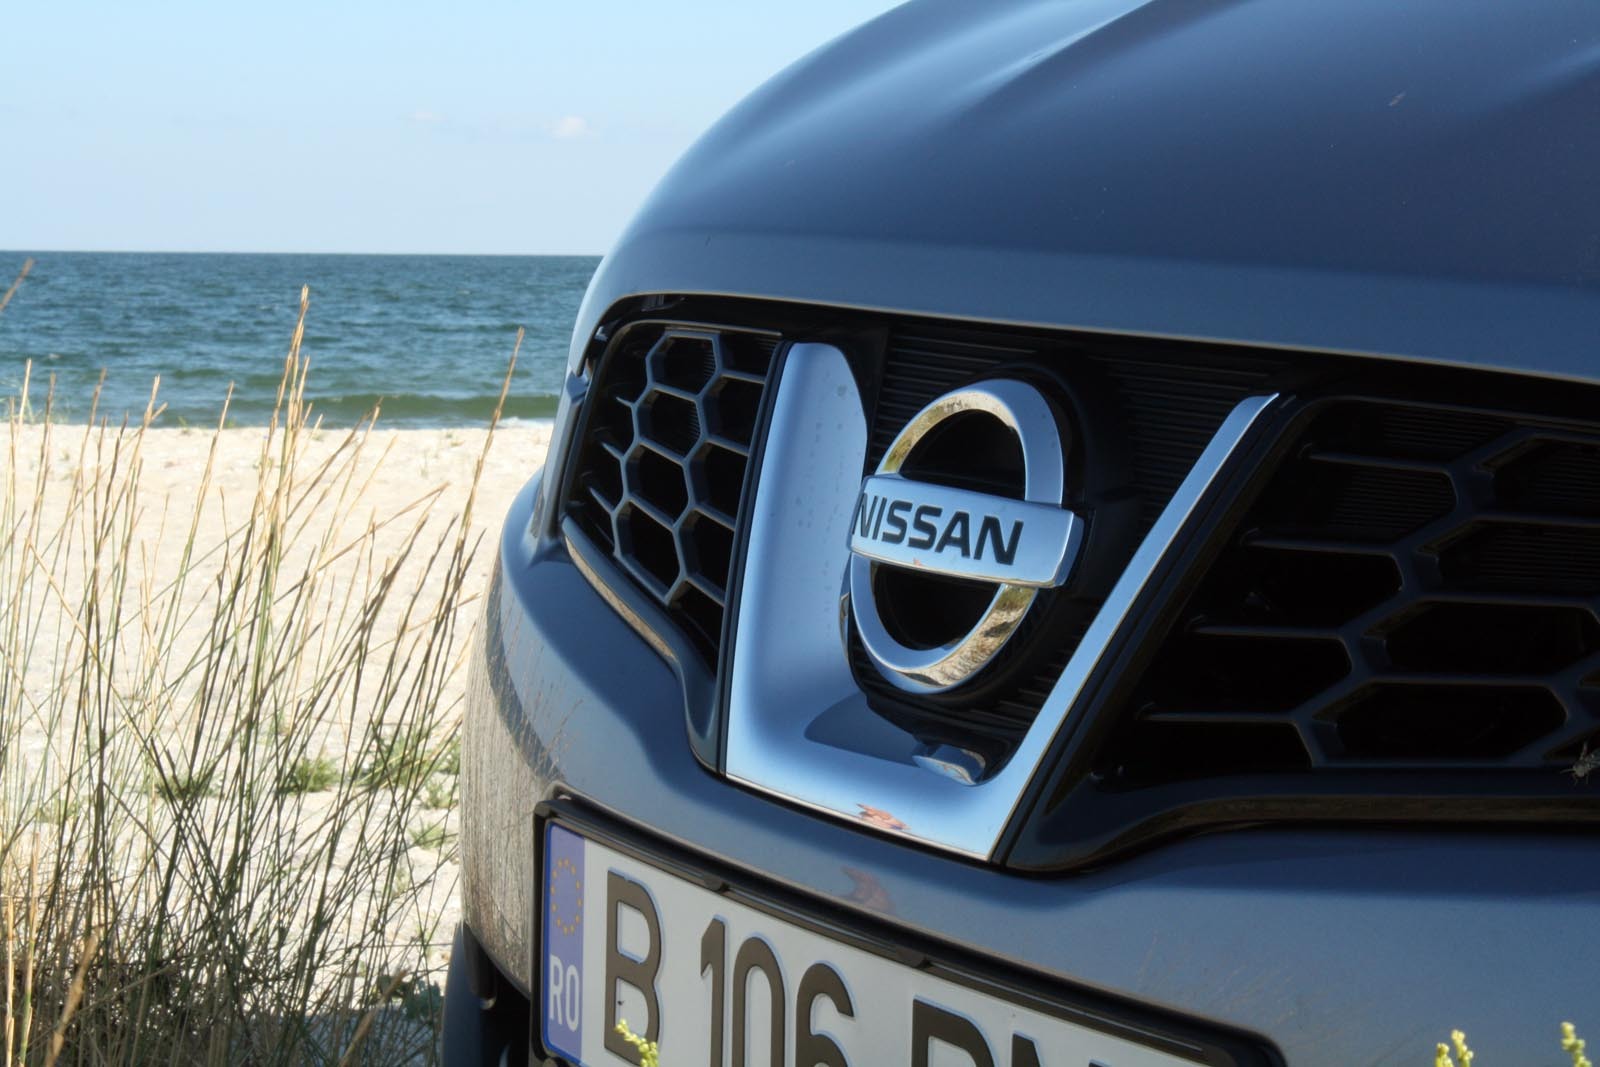 Nissan Qashqai are multe atuuri care i-au asigurat o foarte buna pozitie in segmentul crossover-SUV